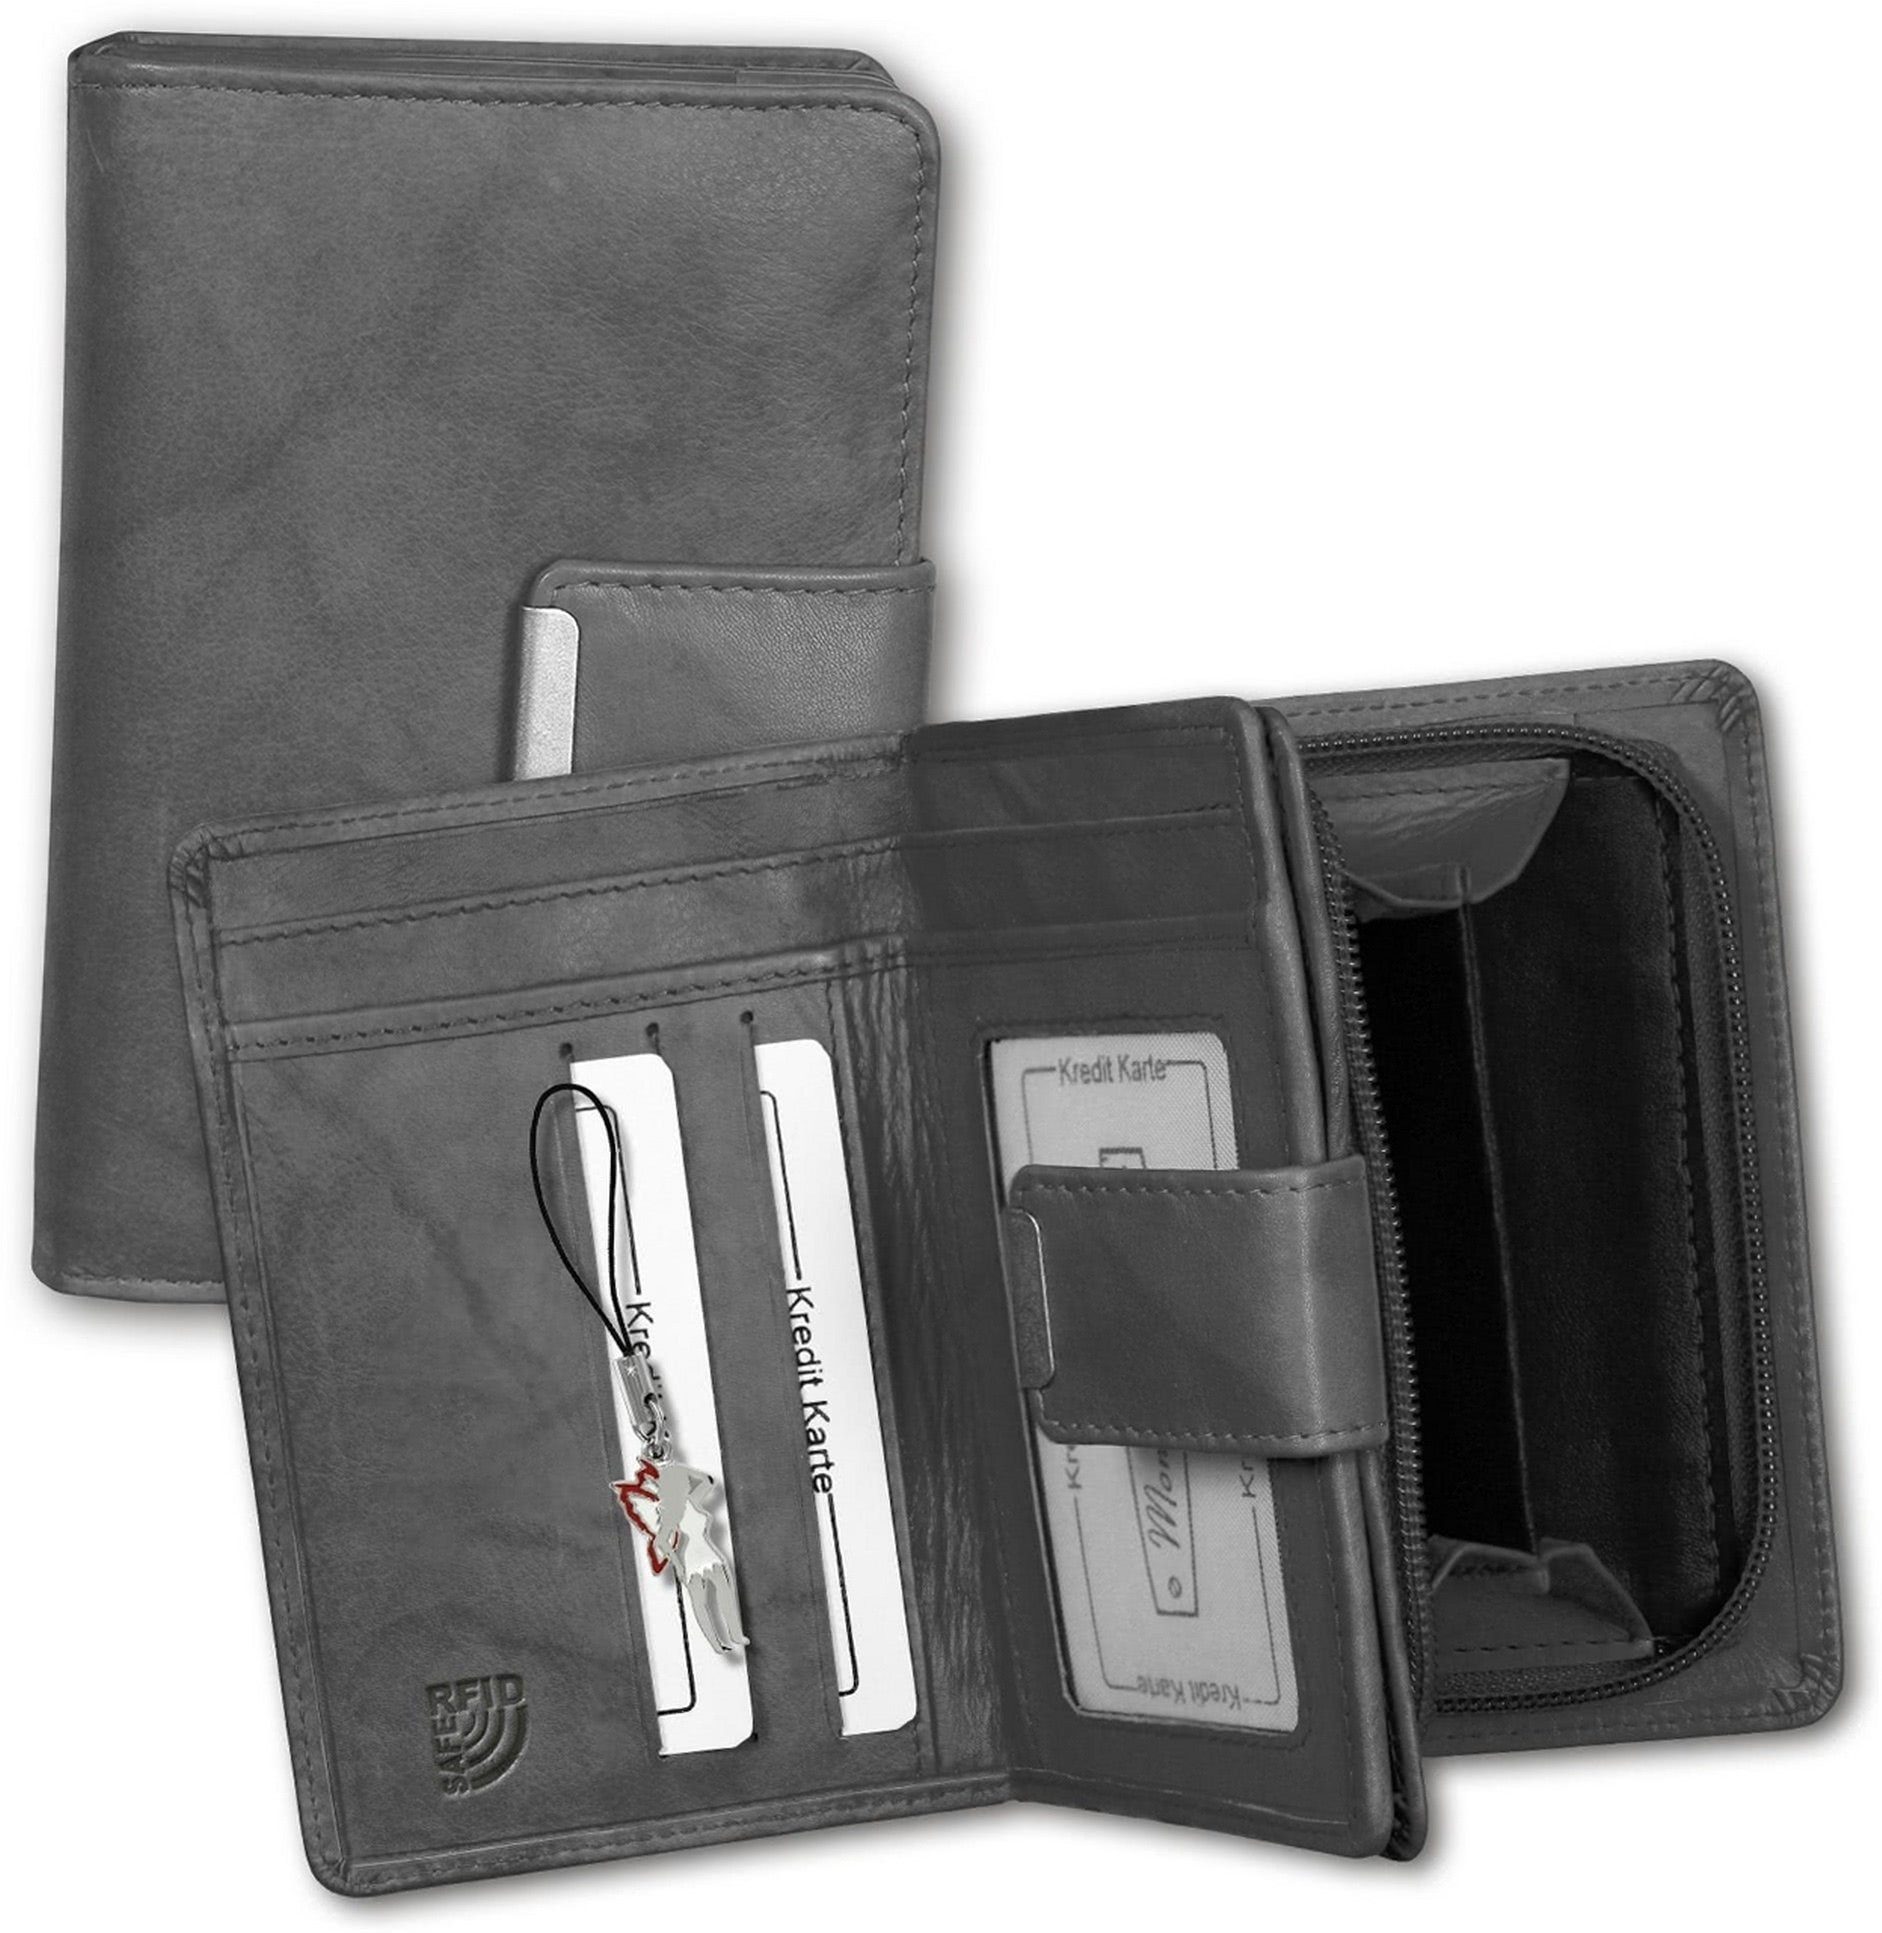 Money Maker Geldbörse Money Maker RFID Blocker Echtleder (Portemonnaie, Portemonnaie), Portemonnaie aus Echtleder grau, Größe ca. 9cm